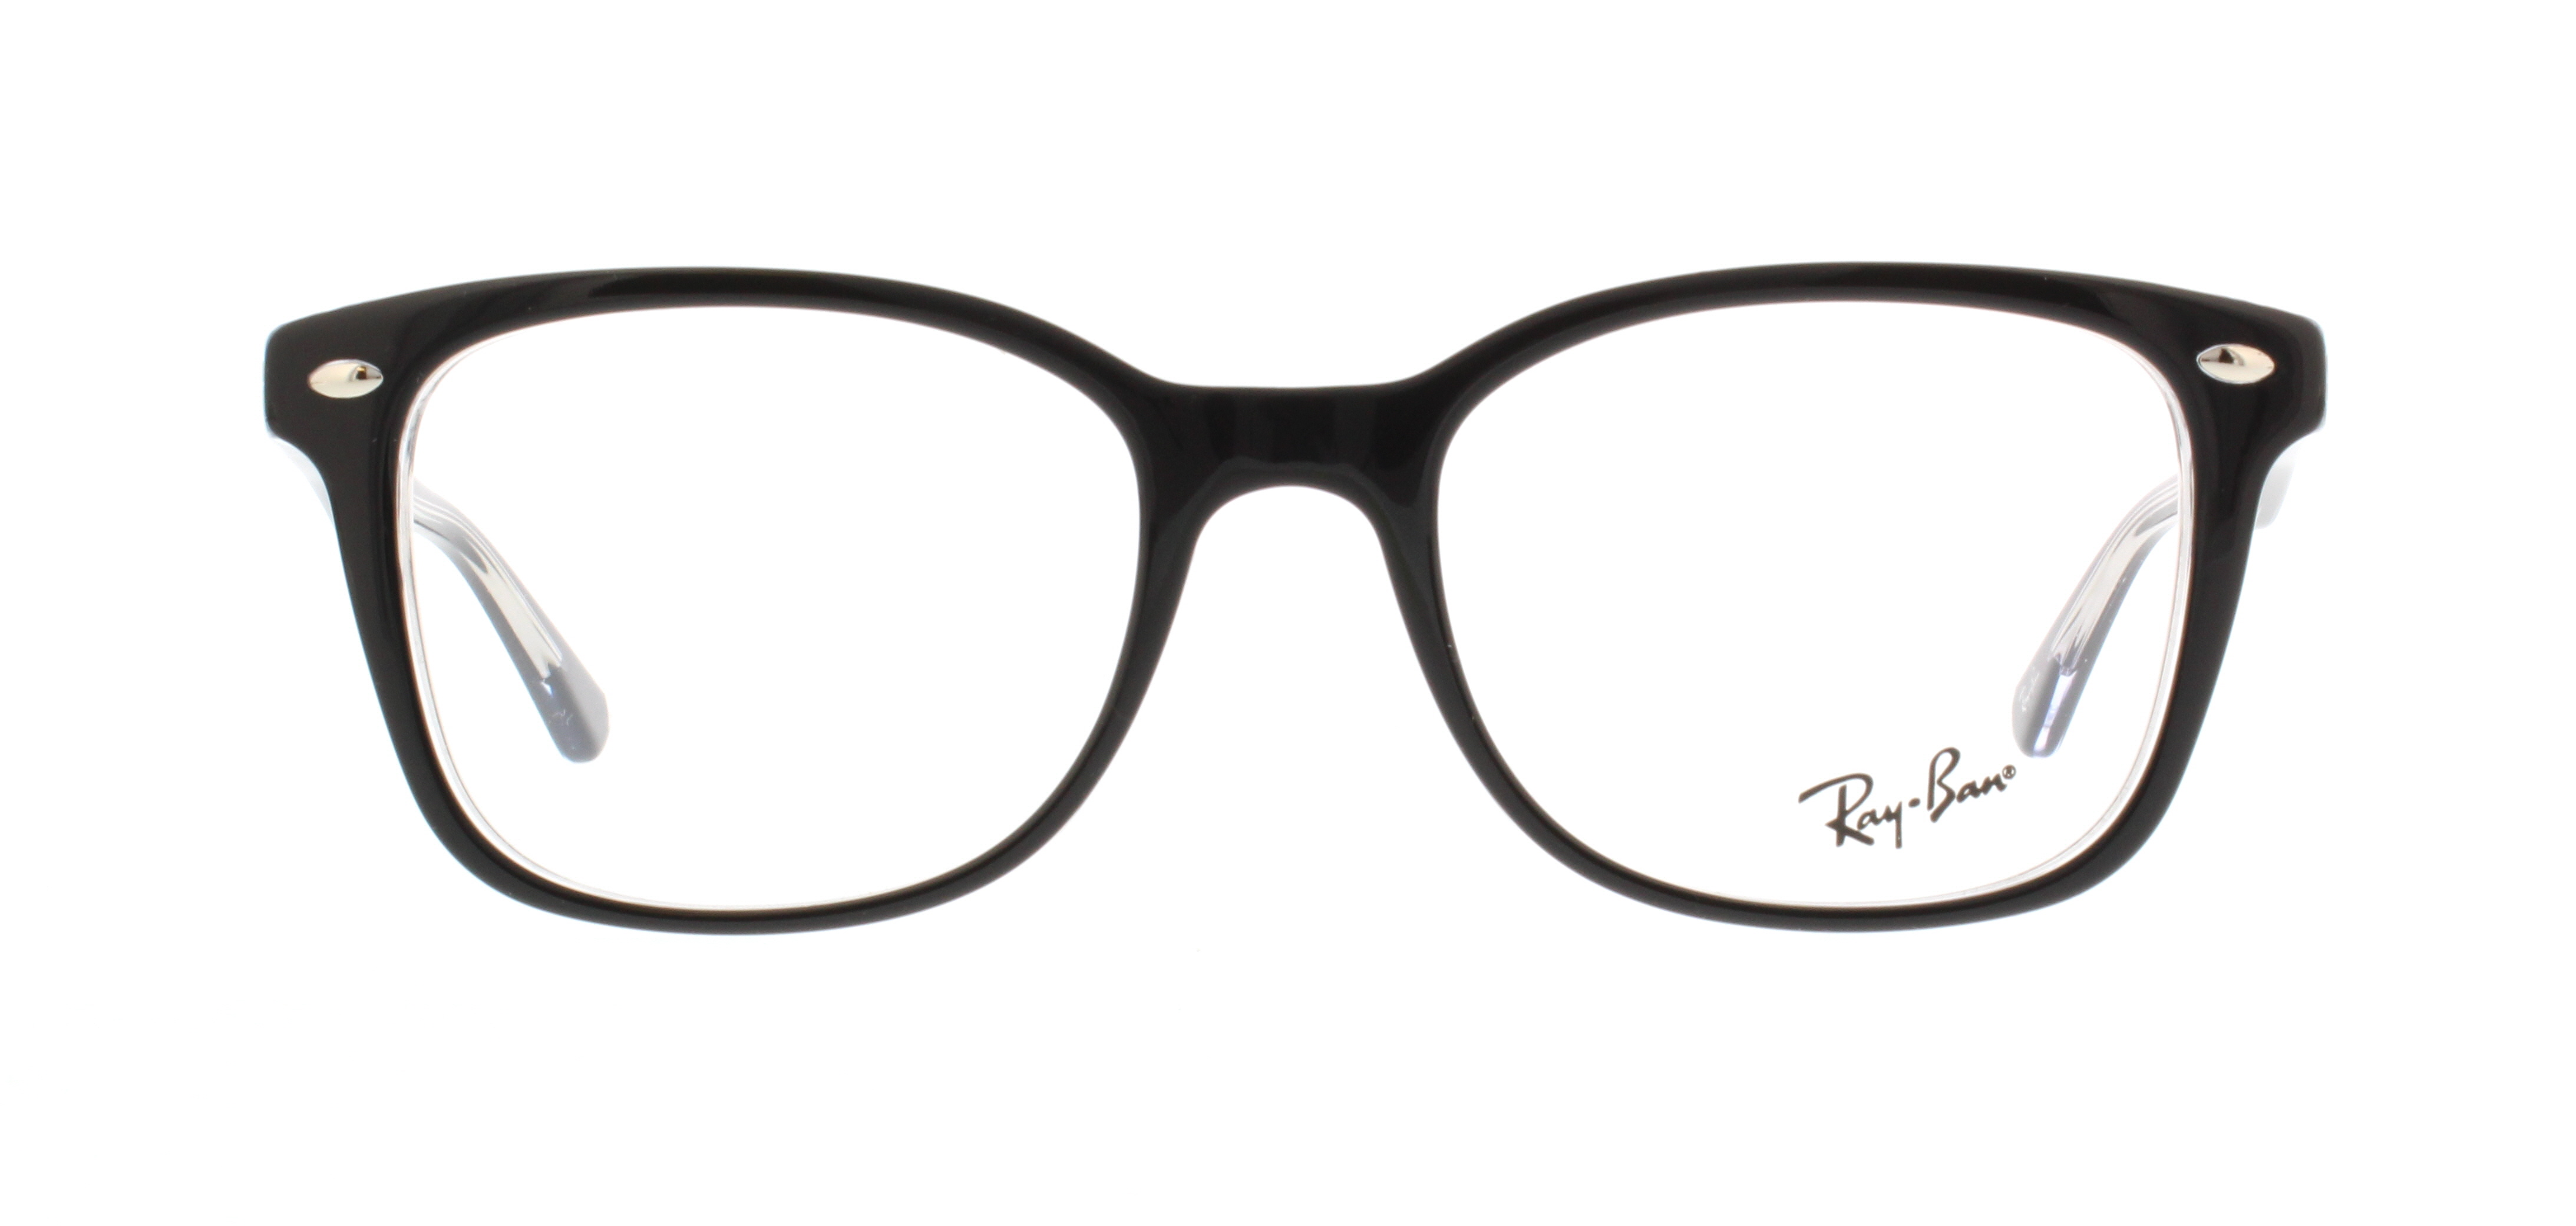 Designer Frames Outlet. Ray Ban Eyeglasses RX5285